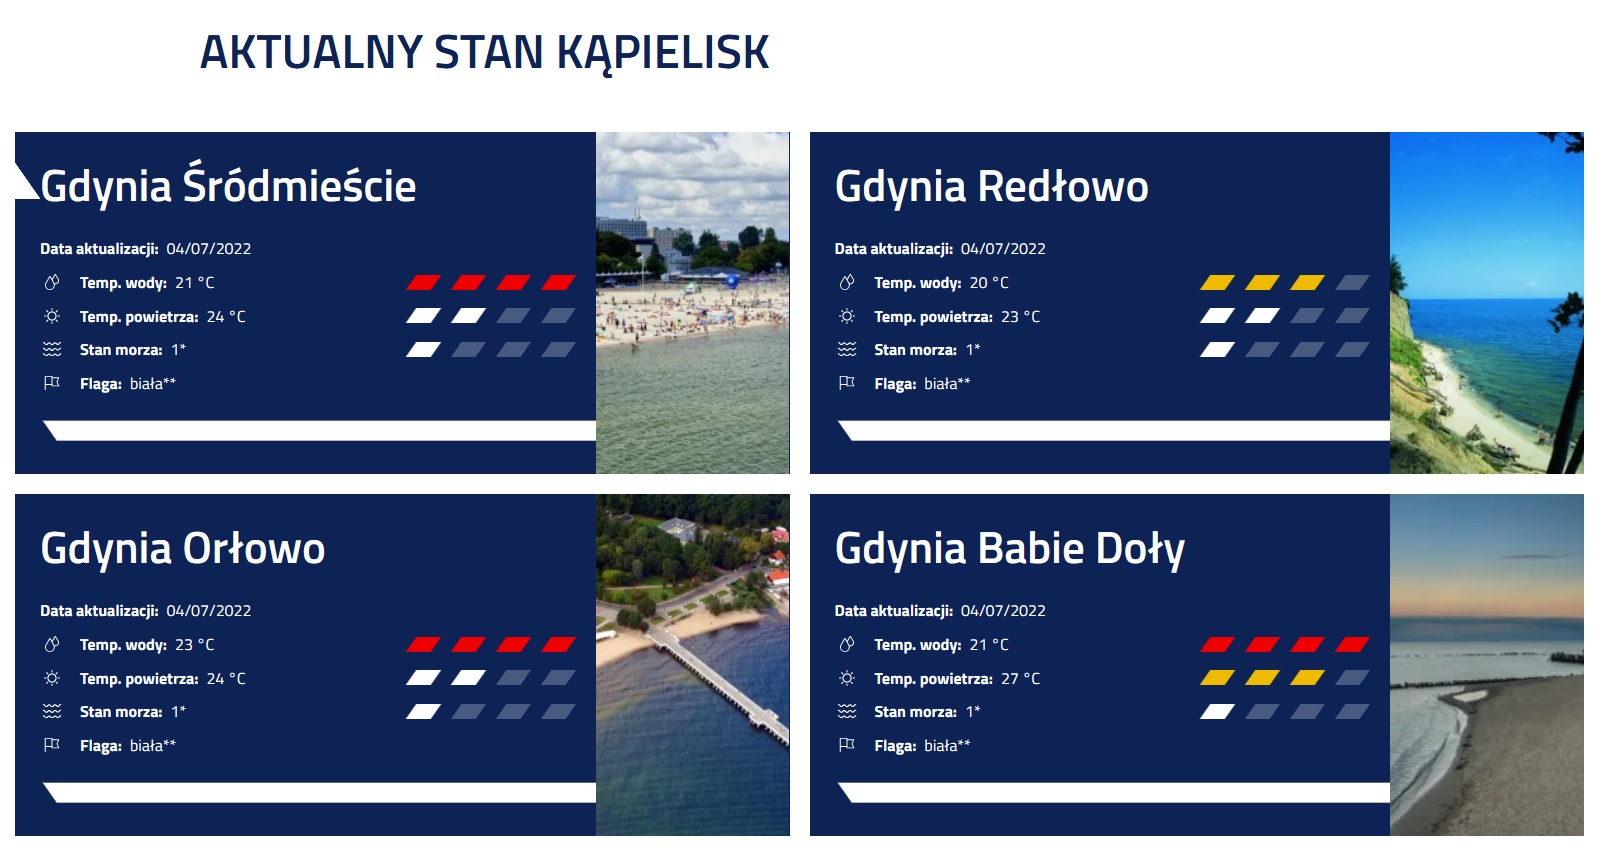 W taki sposób znajdziemy podstawowe dane o tym, co czeka nas na gdyńskich kąpieliskach - wystarczy zajrzeć na stronę internetową Gdyńskiego Centrum Sportu, fot. zrzut ekranu / gdyniasport.pl/pl/obiekty/plaze-i-kapieliska